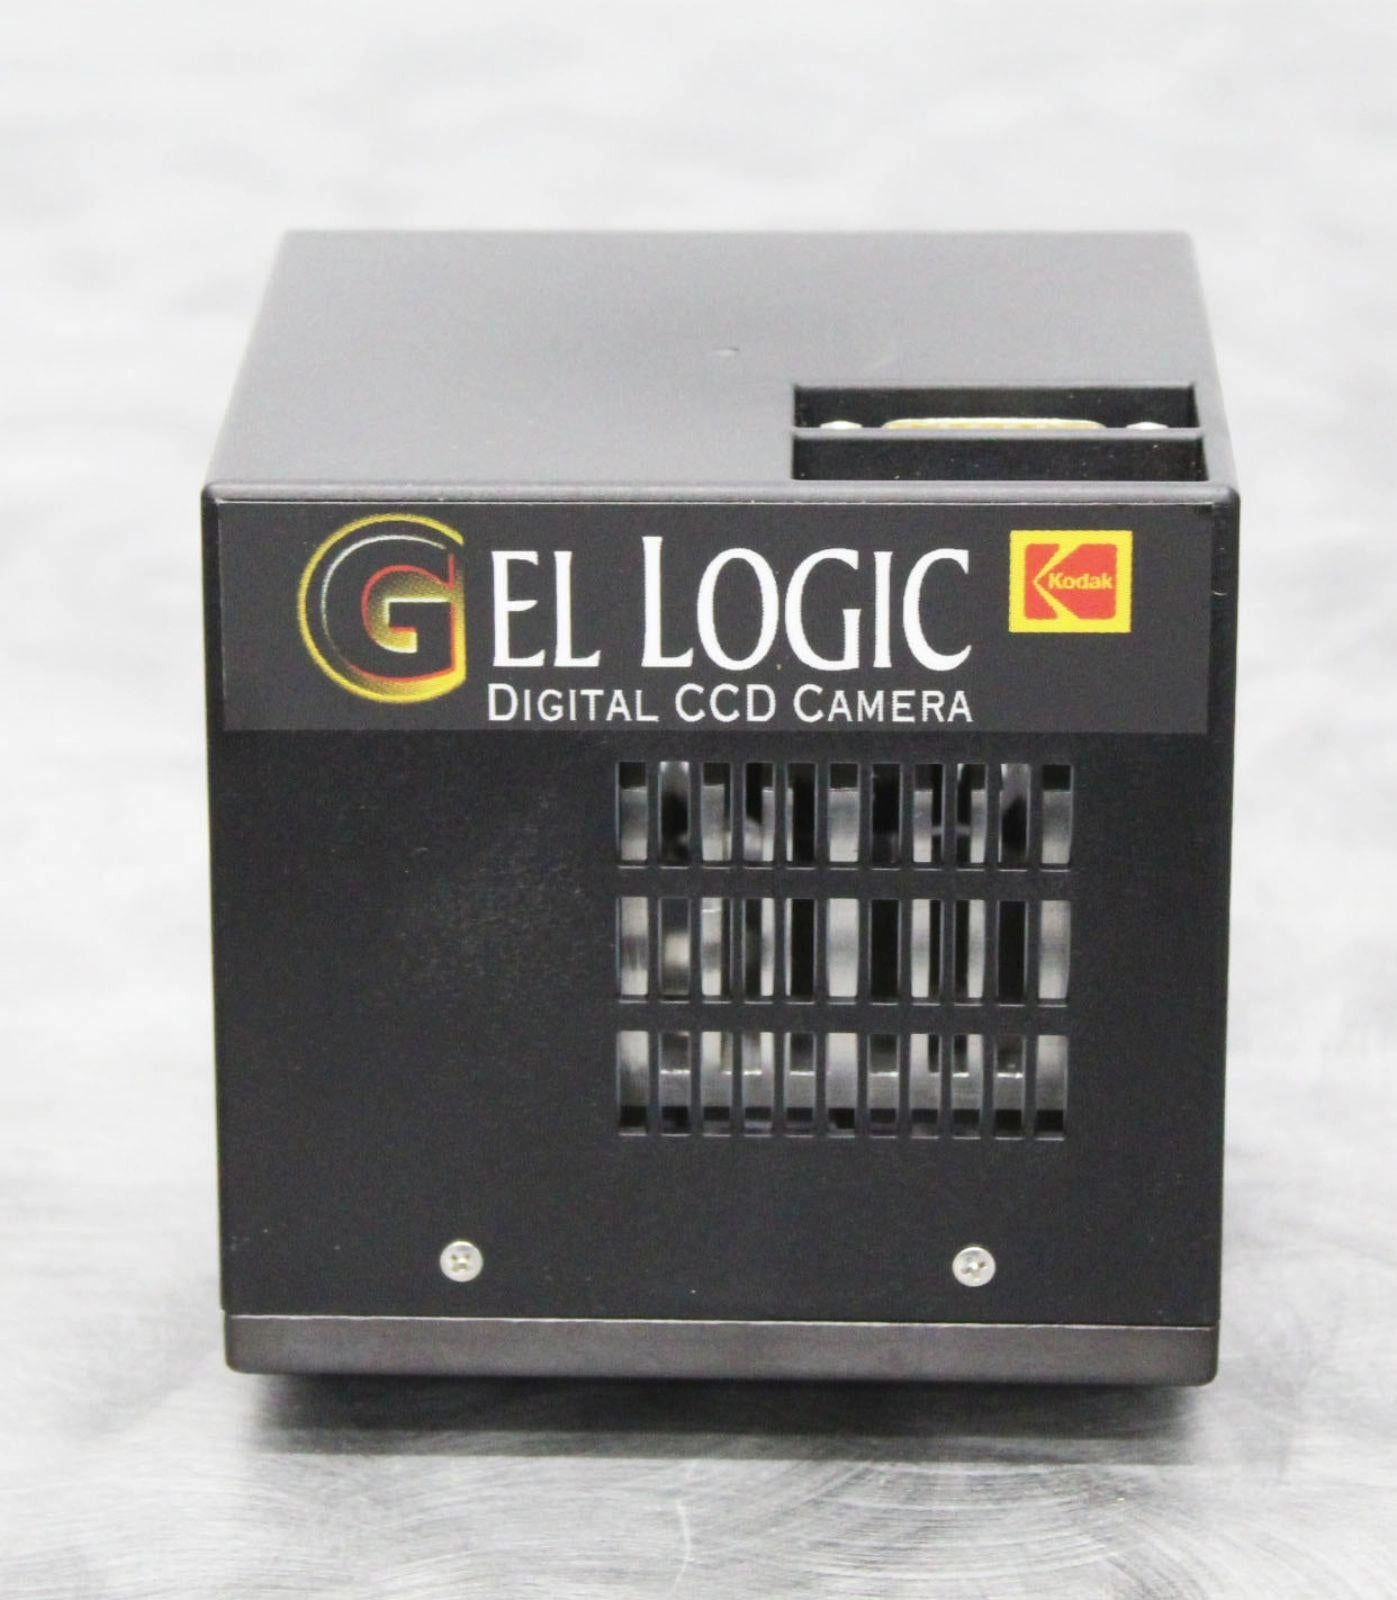 Kodak 1500 Gel Logic Digital CCD Camera for Transilluminator Imaging System